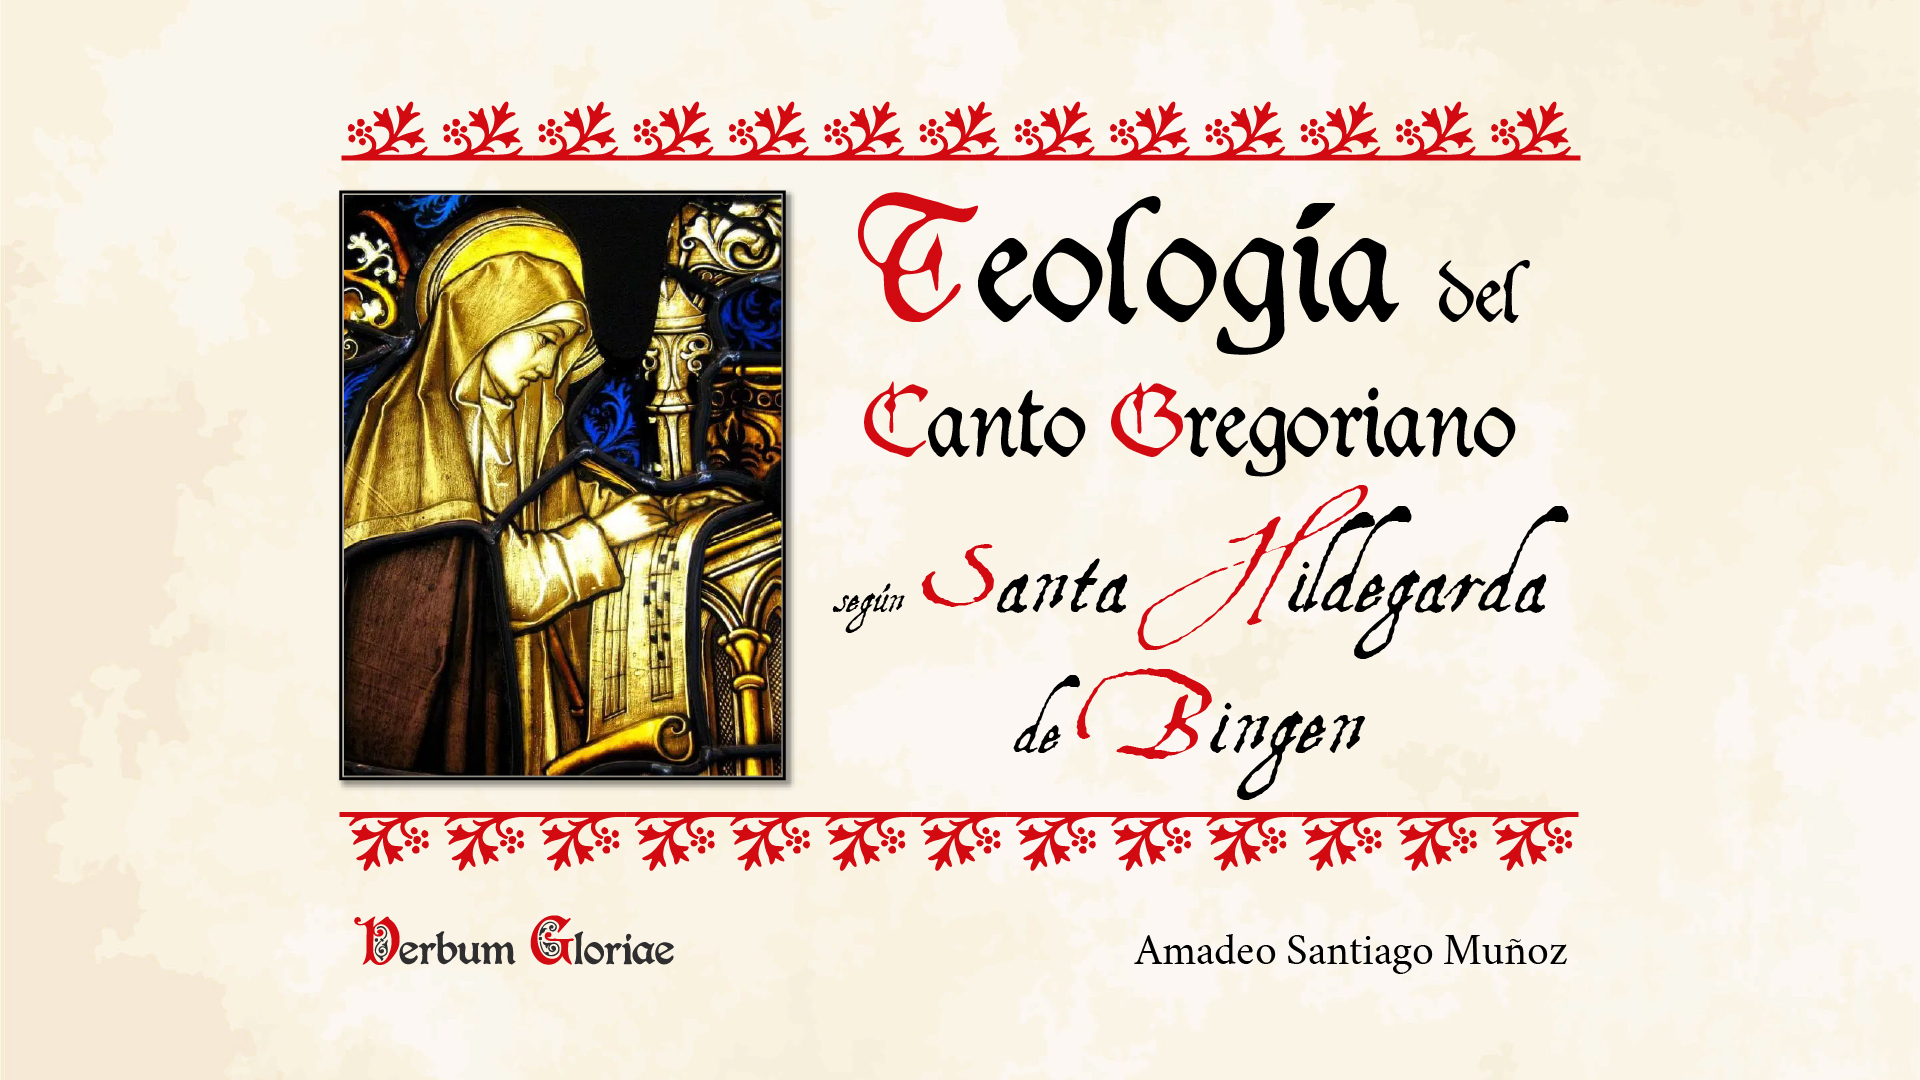 Portada de la conferencia sobre la Teología del Canto Gregoriano según Santa Hildegarda de Bingen